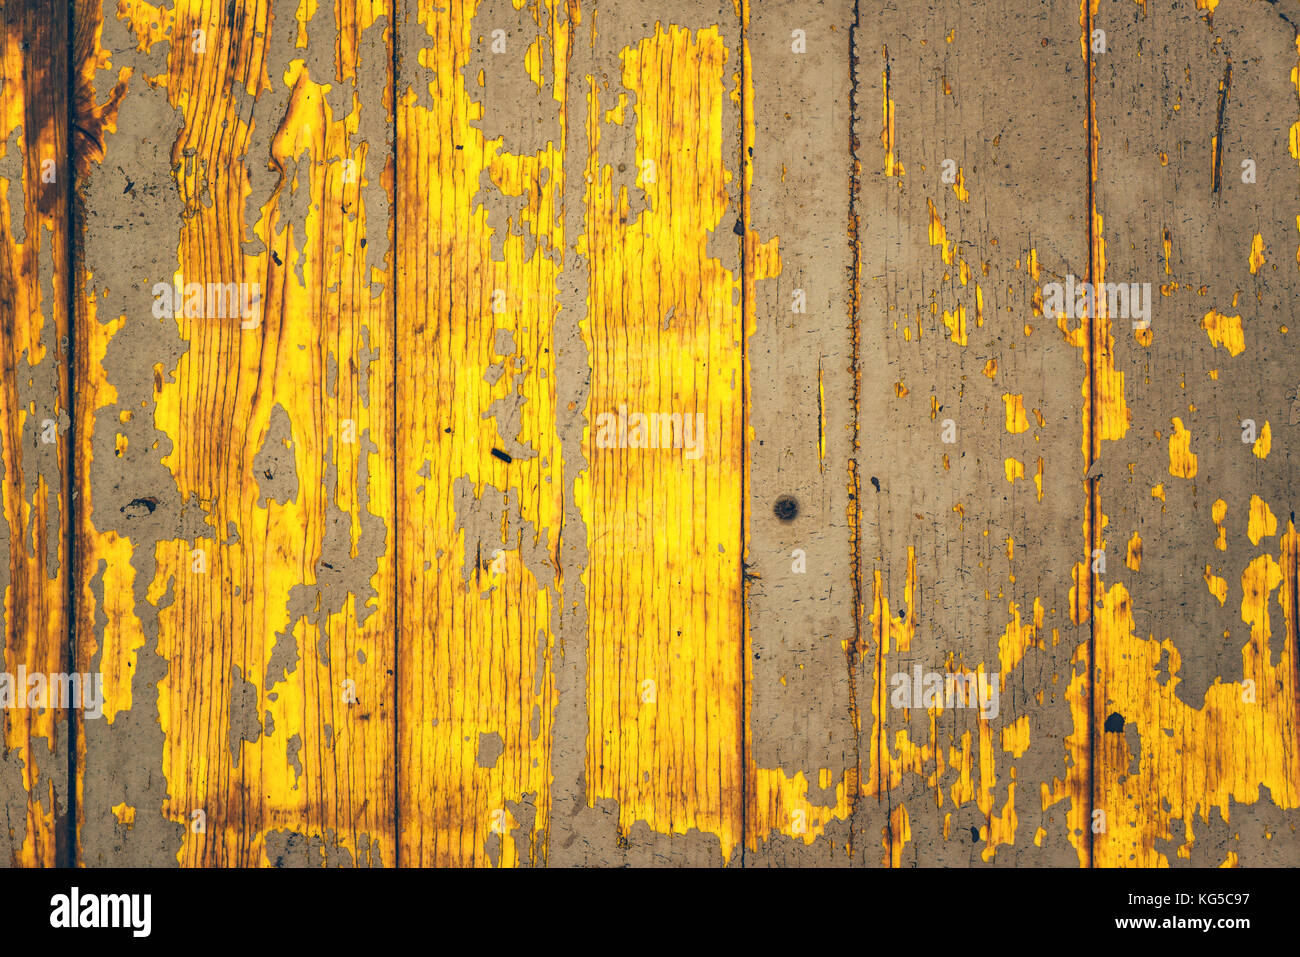 Tiempo gastado amarillo de textura de madera con pintura pelando la superficie, rústico y envejecido y patrones de fondo Foto de stock